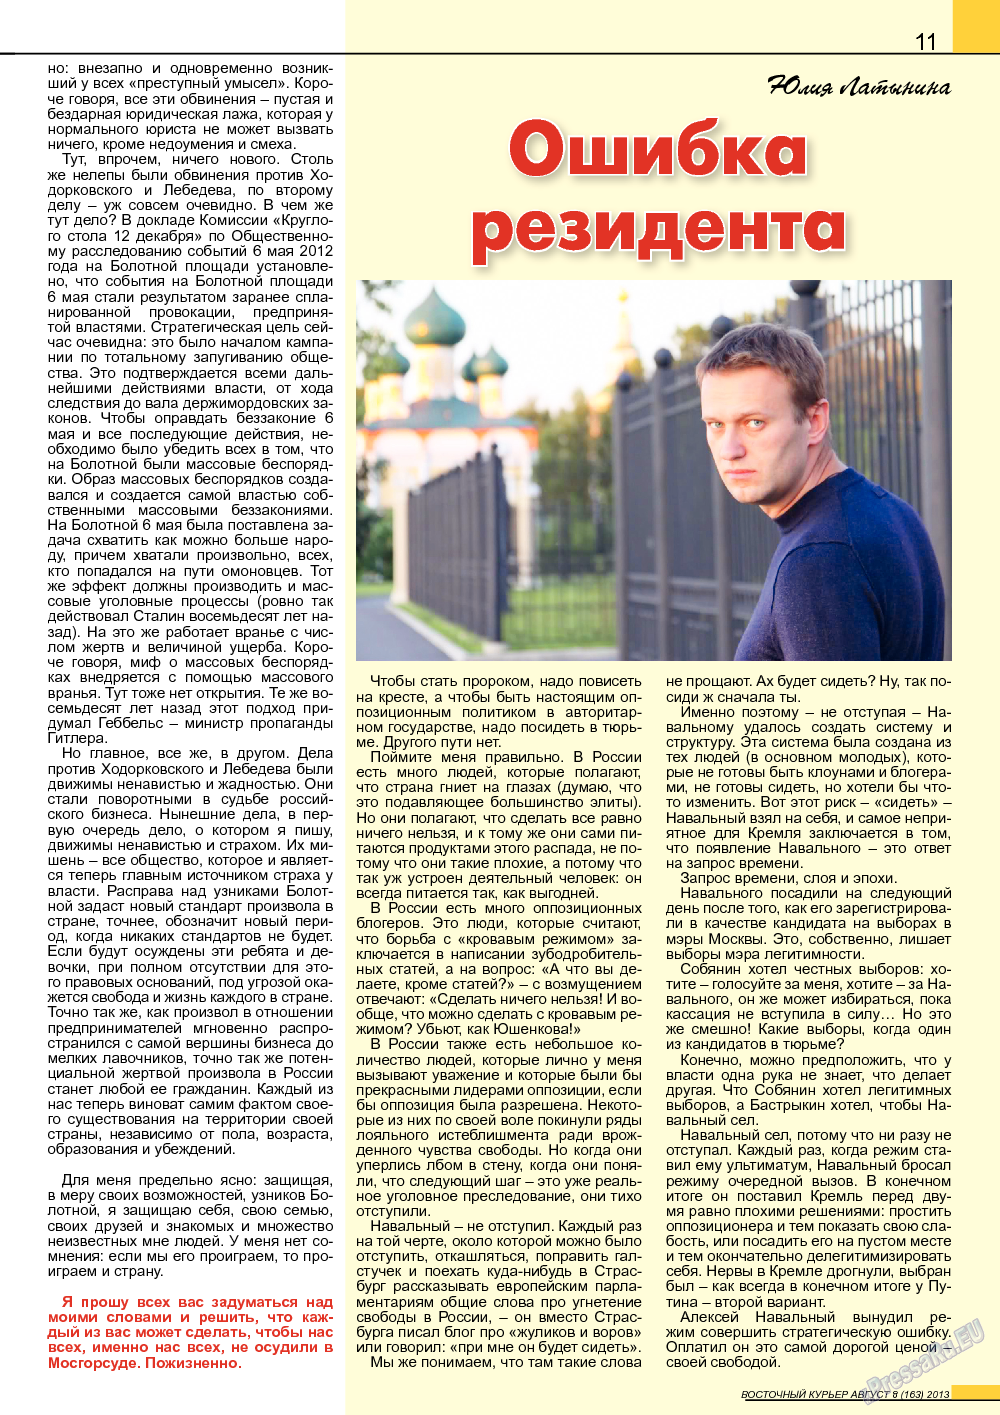 Восточный курьер (журнал). 2013 год, номер 8, стр. 11